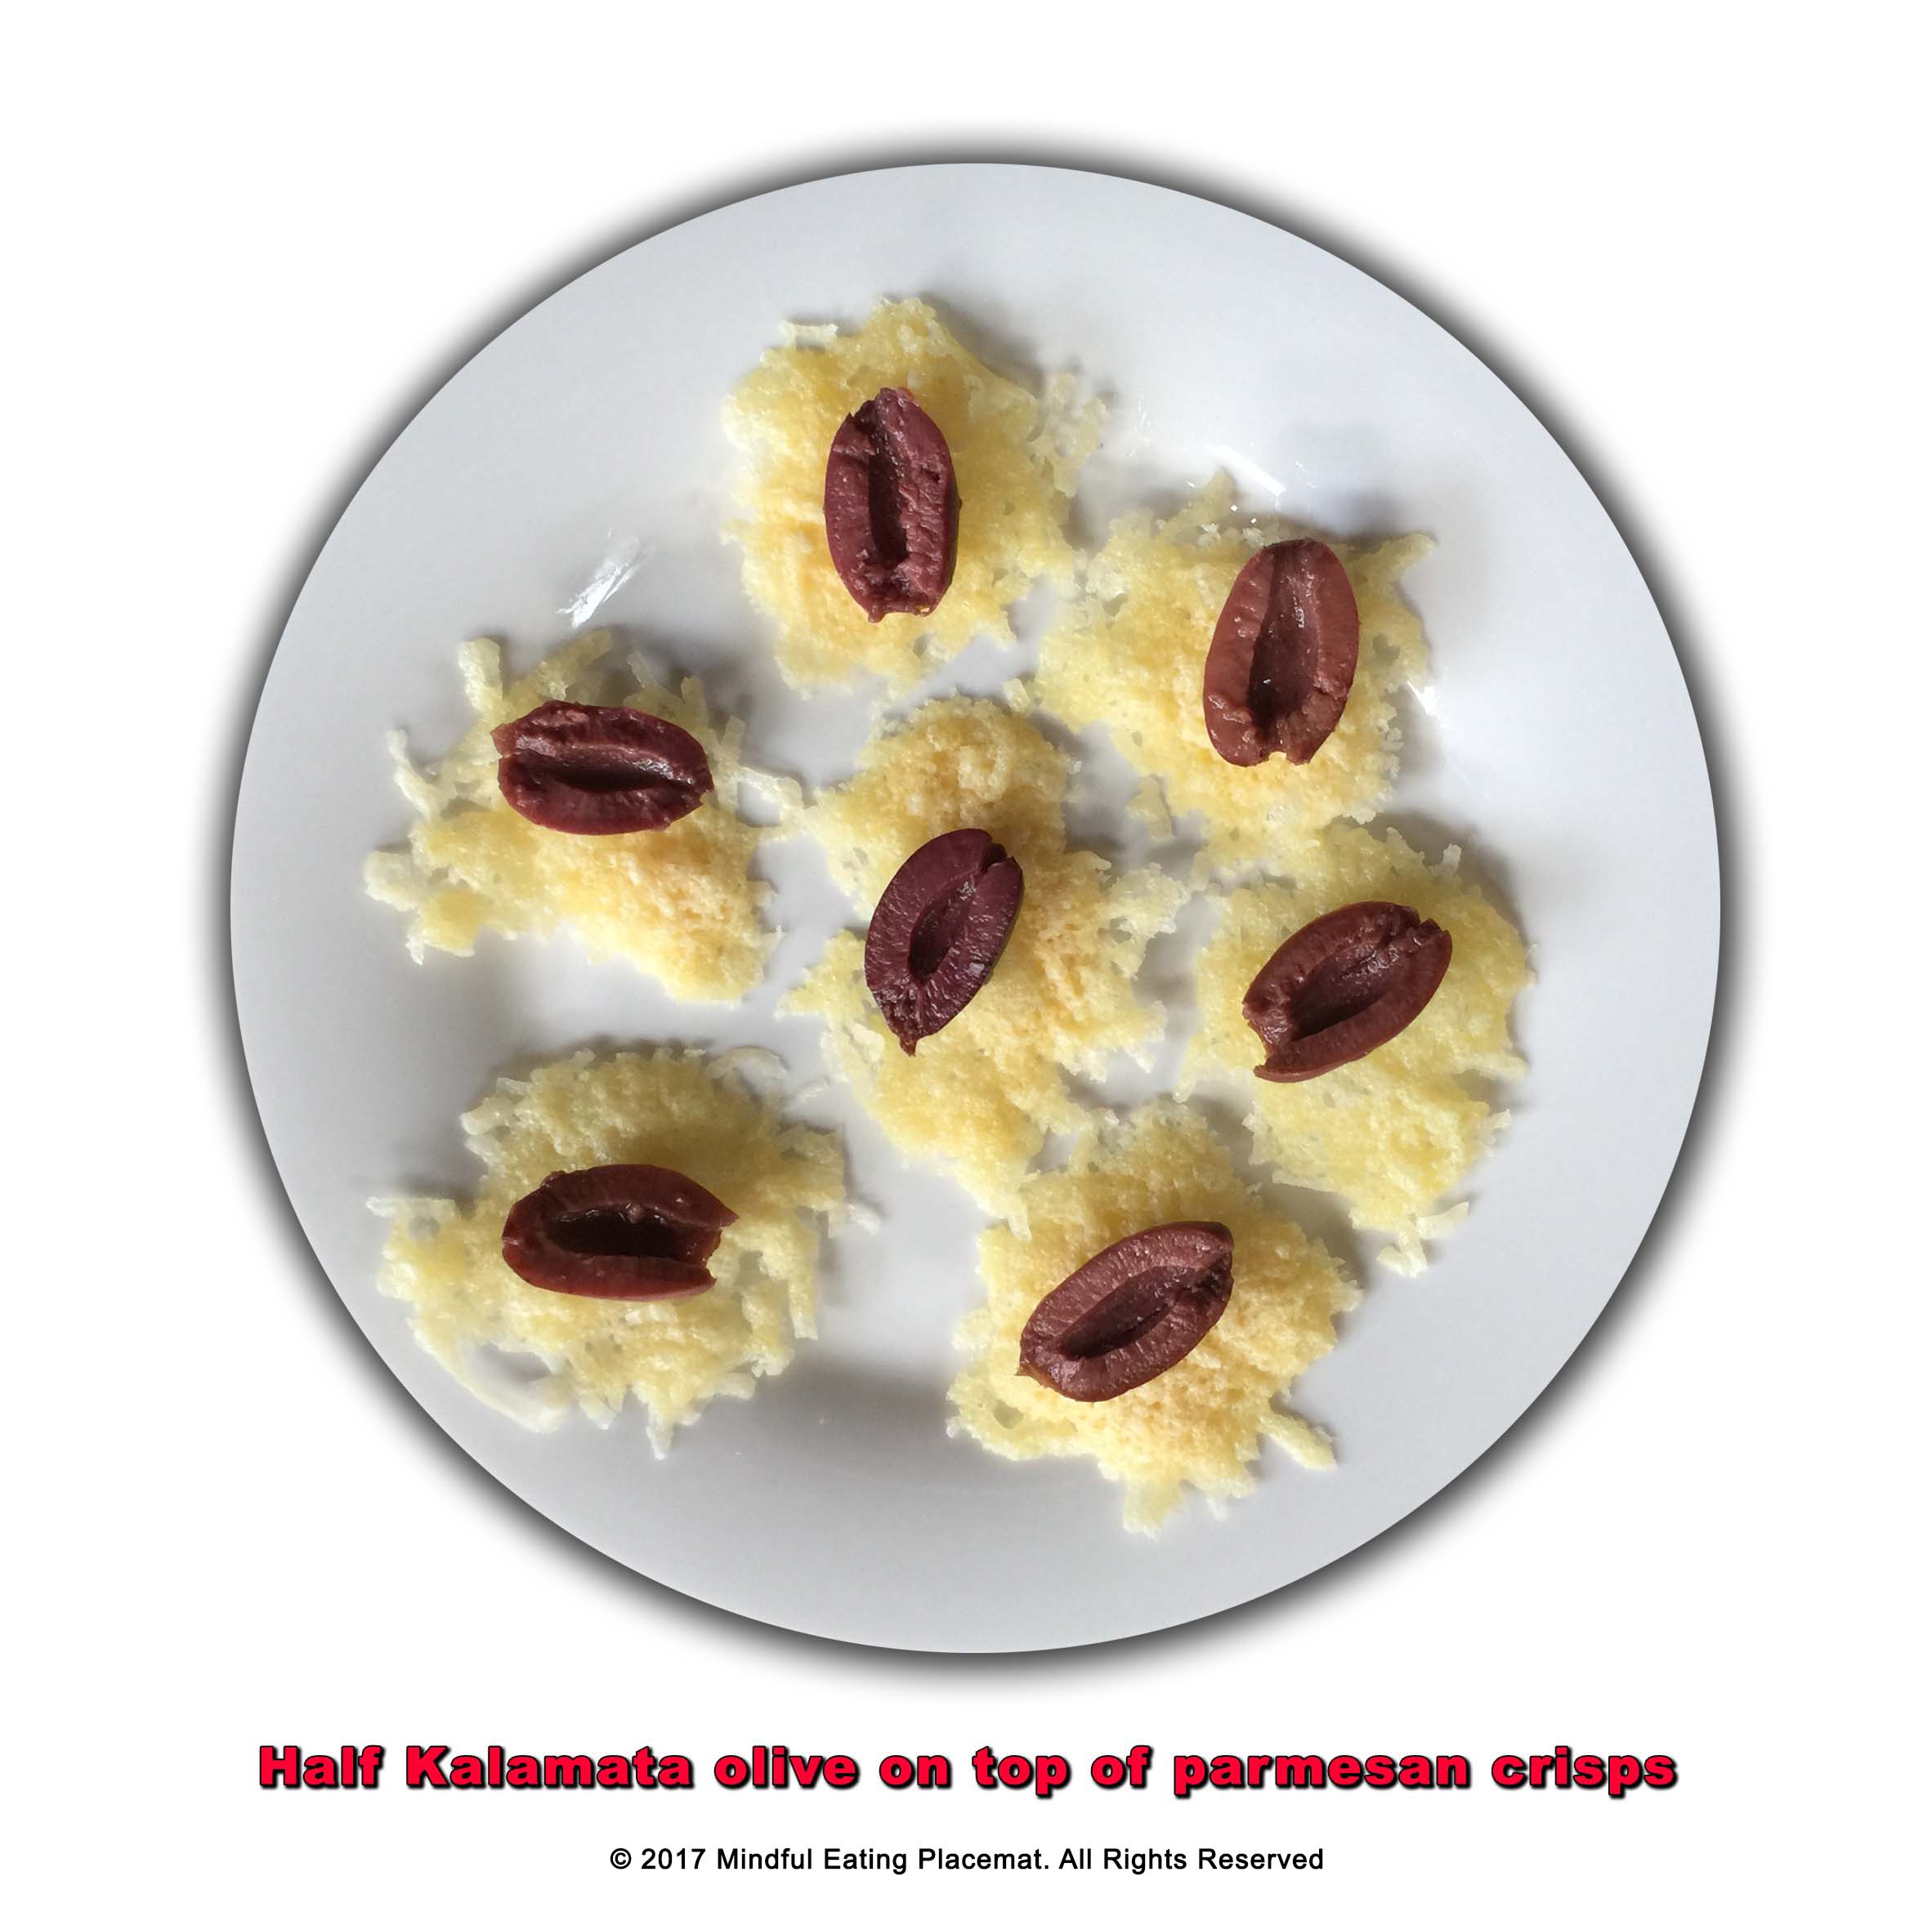 Parmesan chips with sliced olives